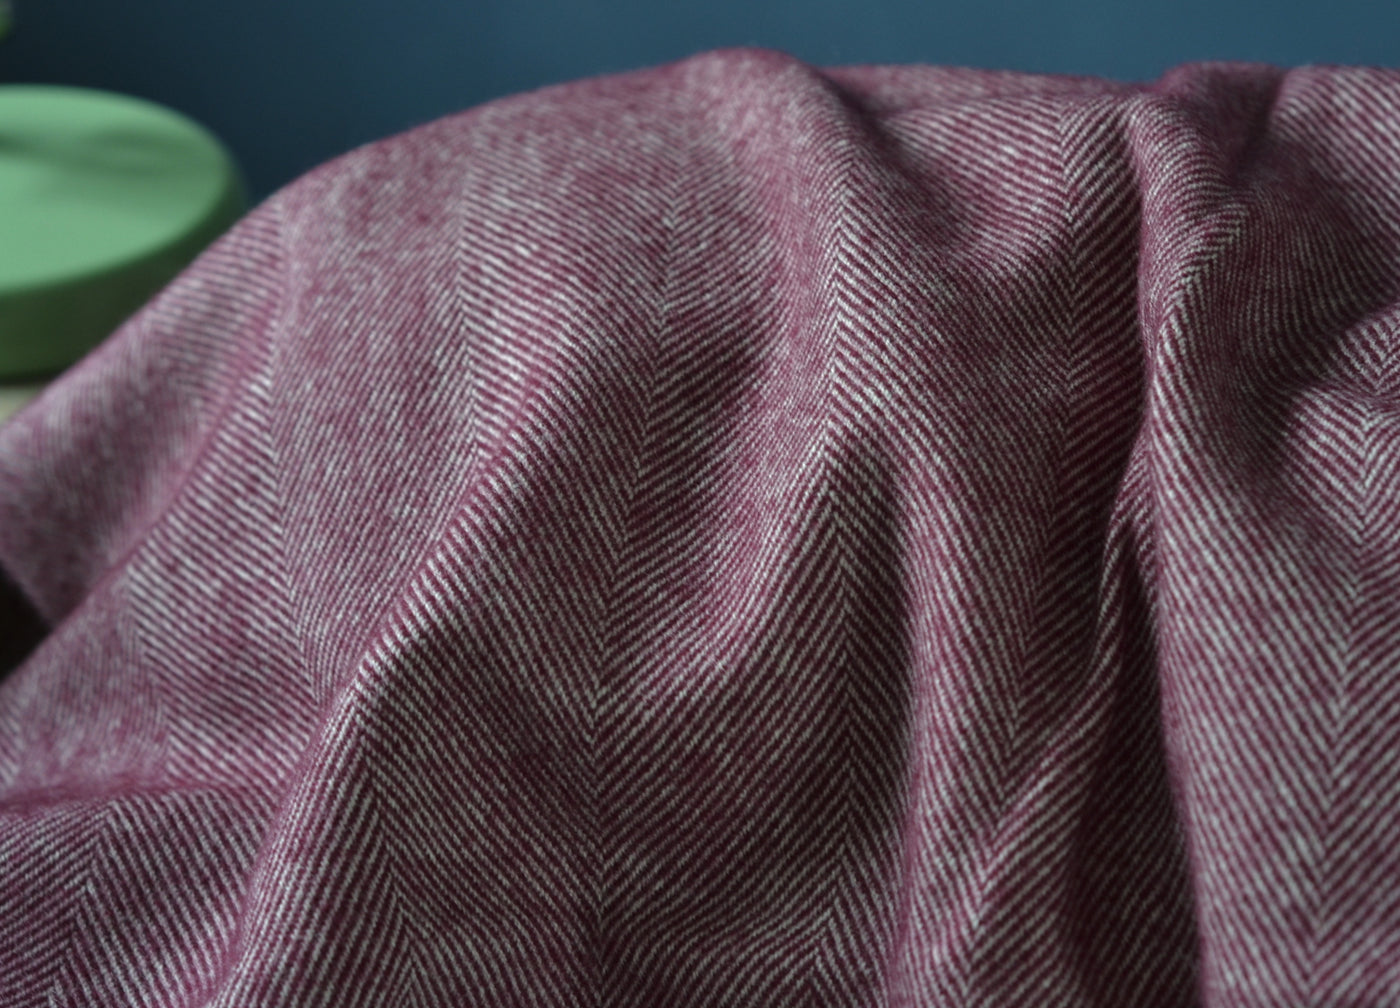 Closeup of large purple merino herringbone wool blanket.